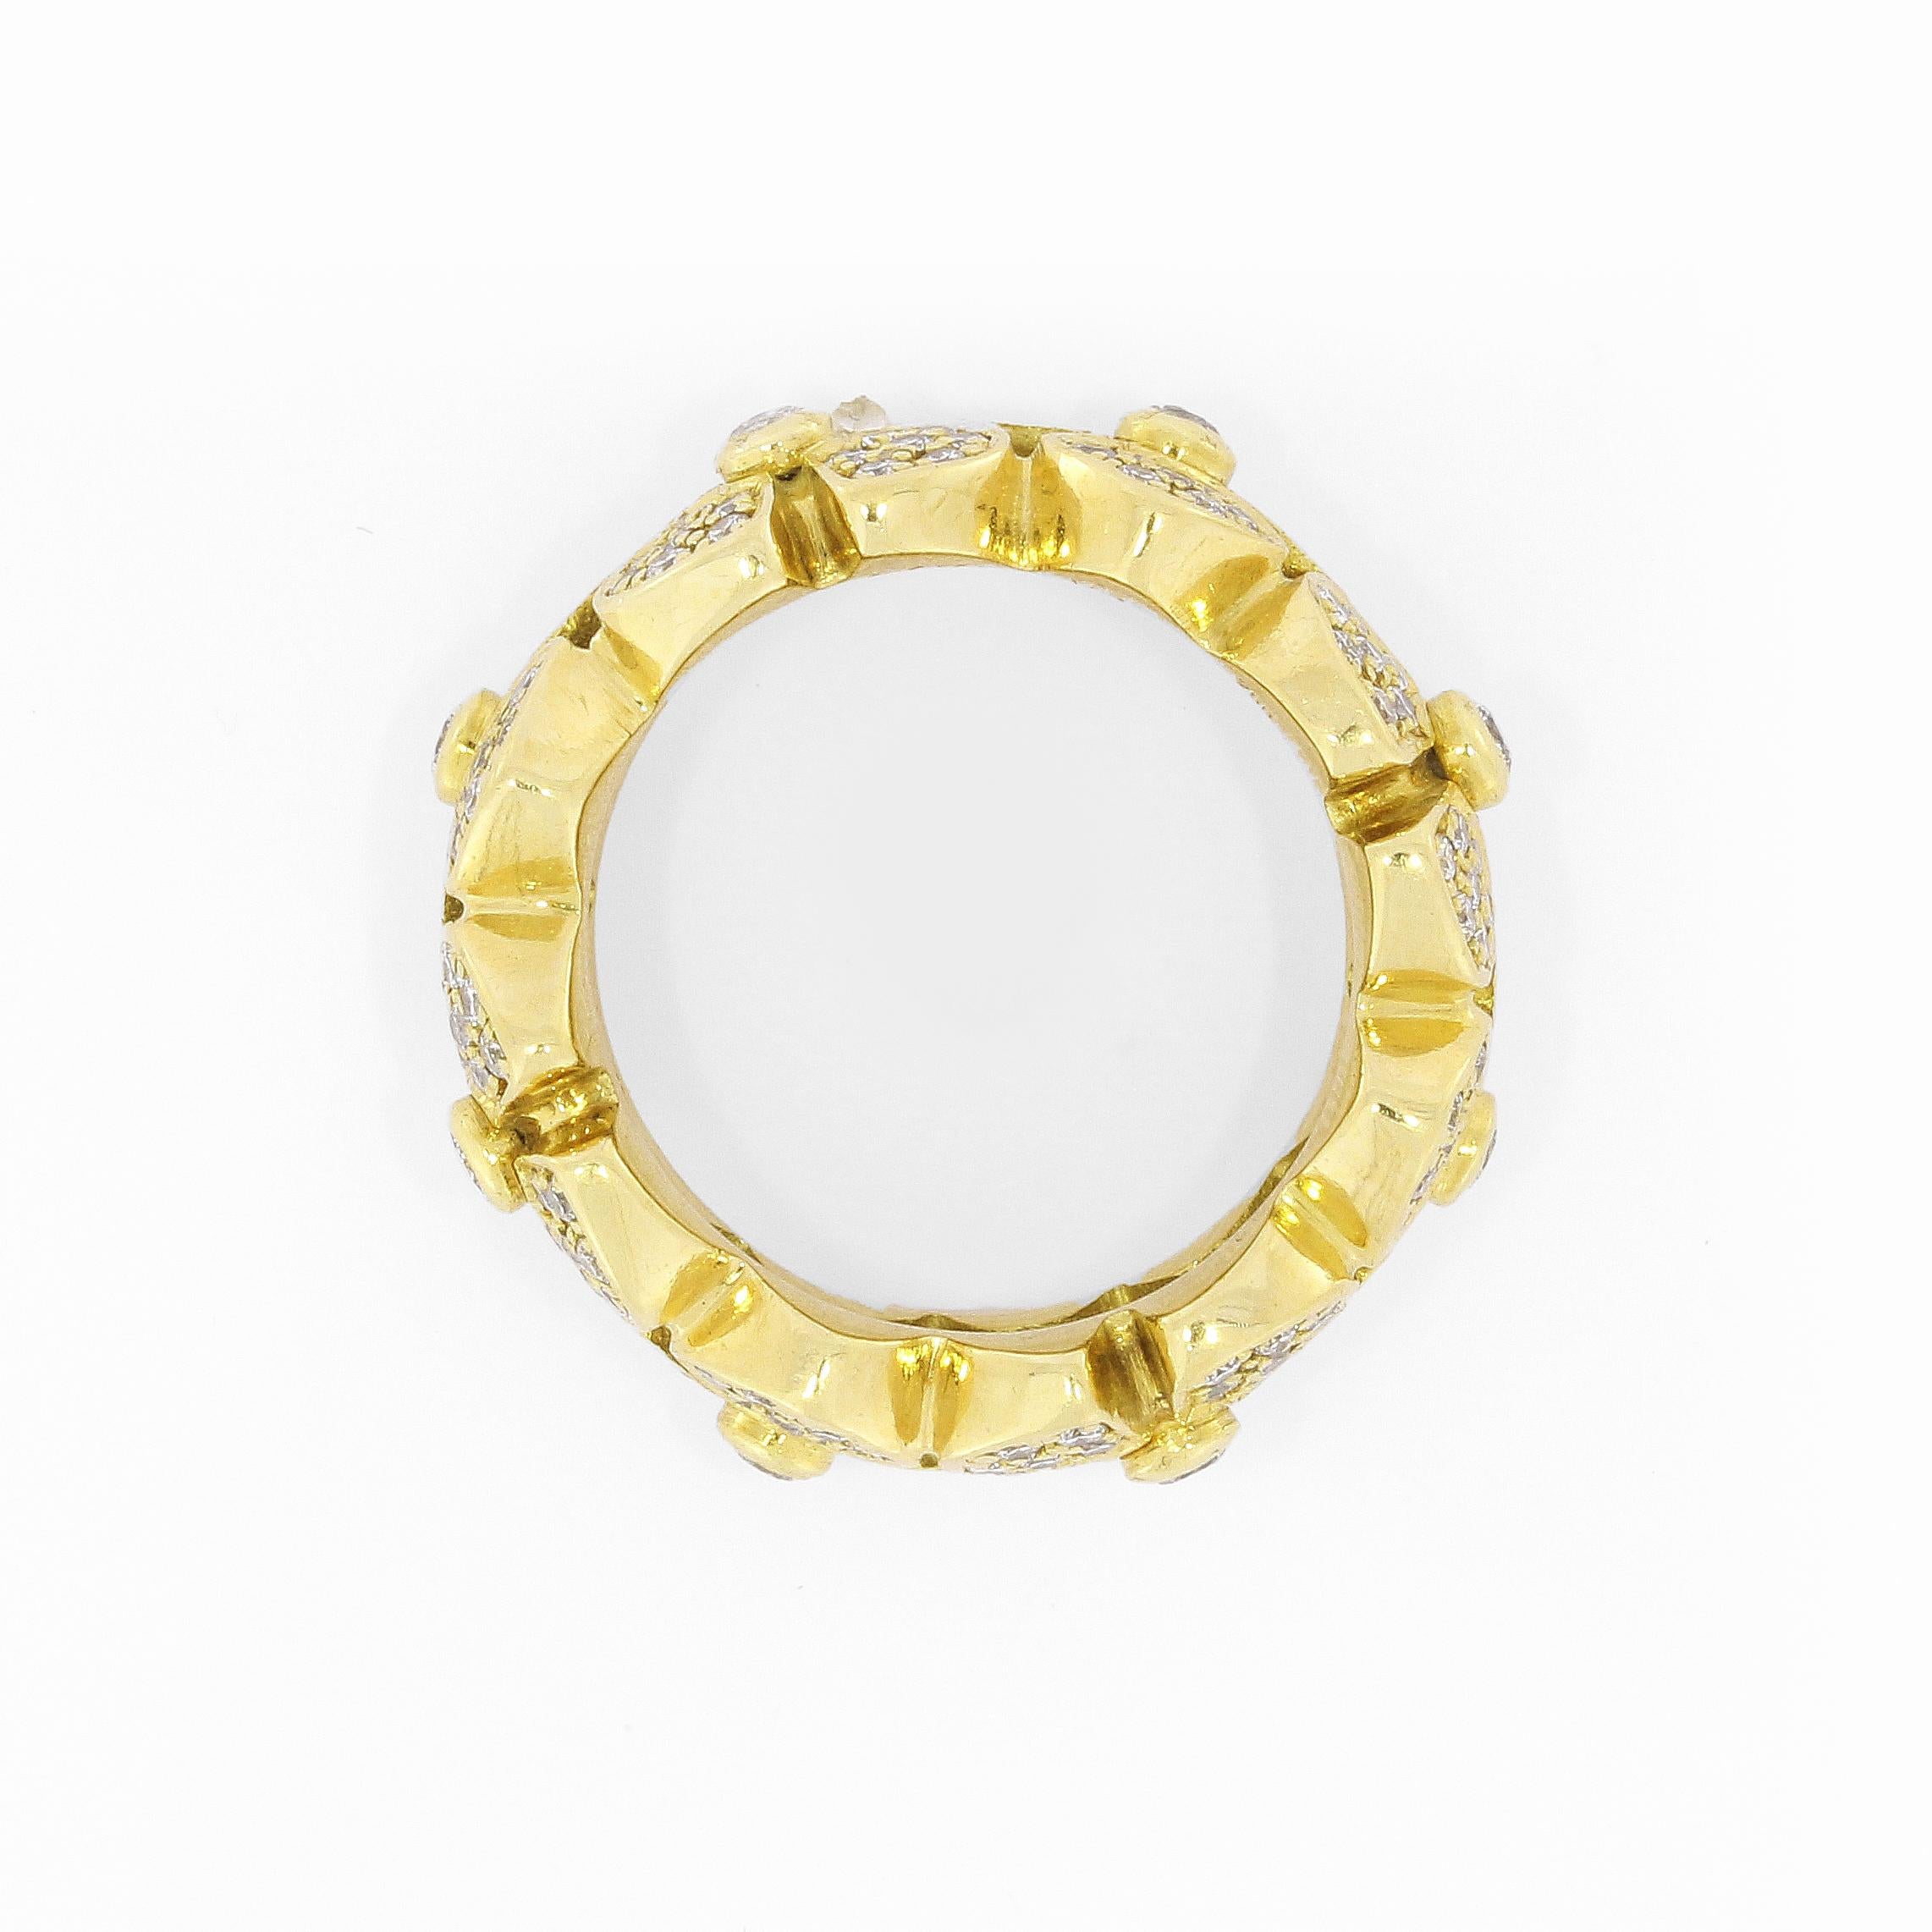 18k Gelbgold Diamond Band Ring mit einem schönen floralen Design.

176 Diamanten
Gewicht des Diamanten: 1,47 Karat
Farbe: tw
Klarheit: vs
Schliff: Brillant